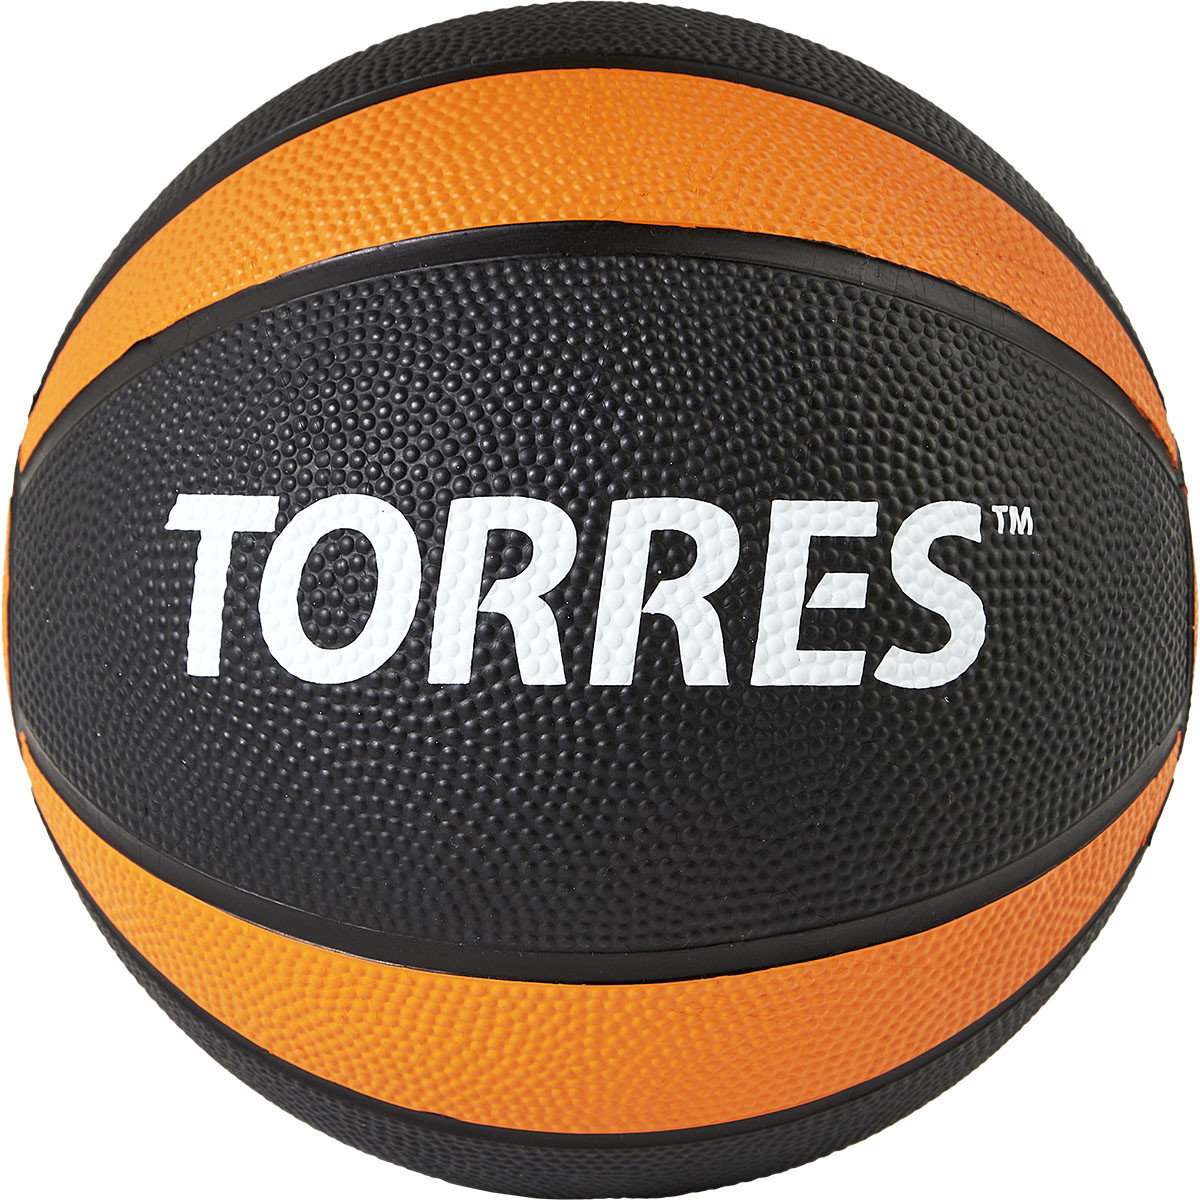   Torres 2 AL00222